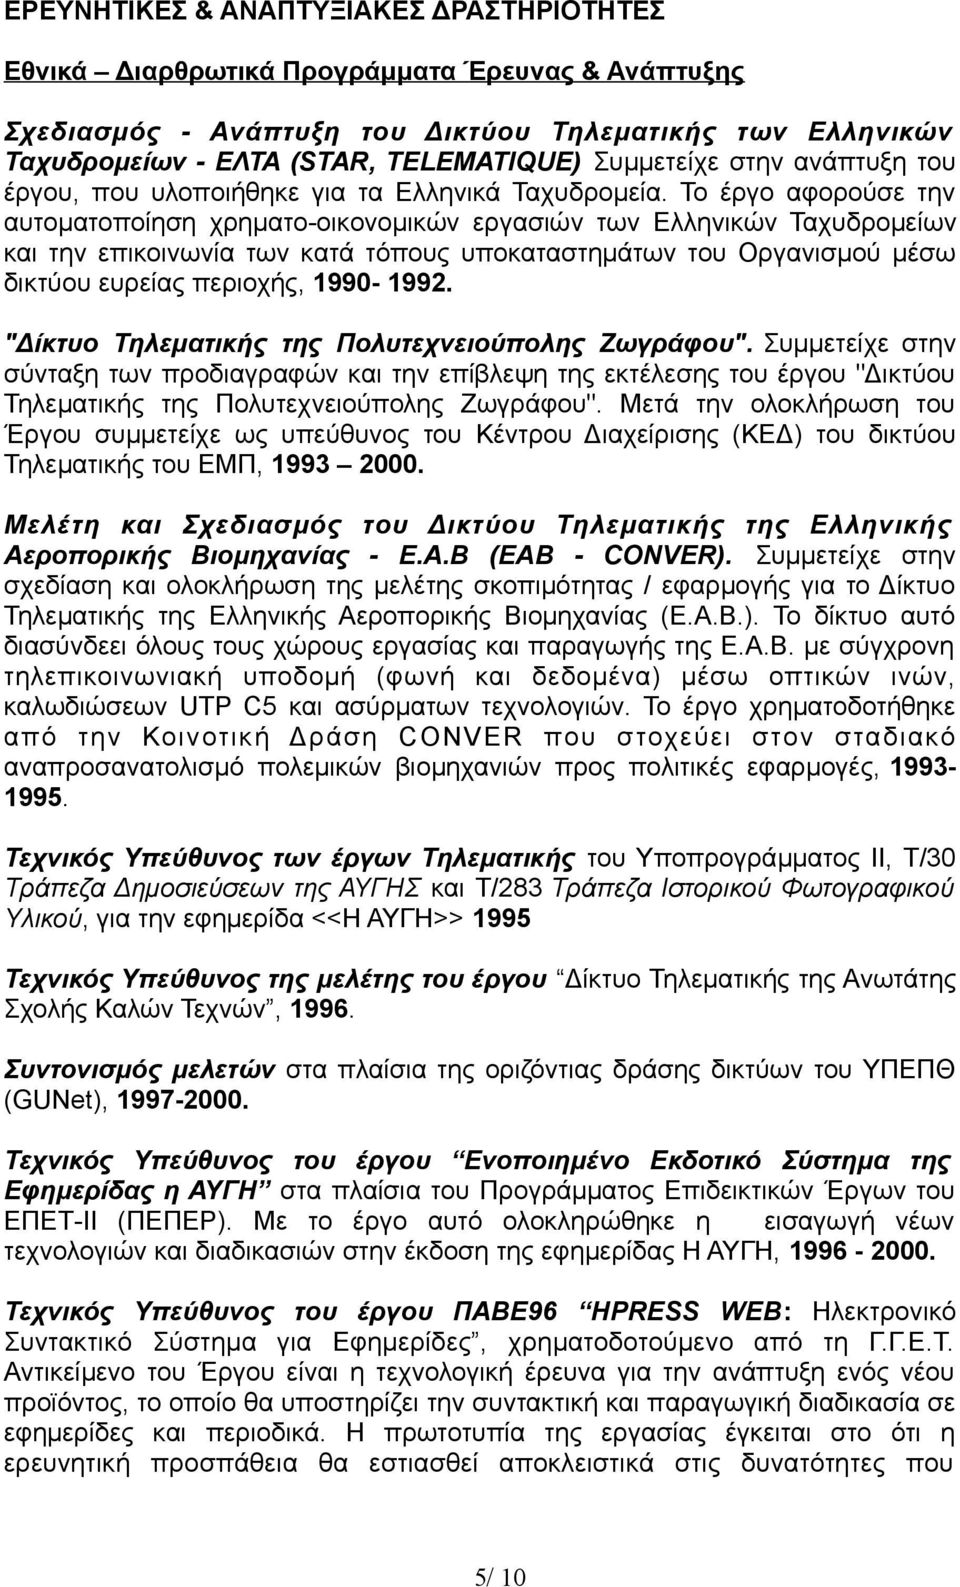 Το έργο αφορούσε την αυτοματοποίηση χρηματο-οικονομικών εργασιών των Ελληνικών Ταχυδρομείων και την επικοινωνία των κατά τόπους υποκαταστημάτων του Οργανισμού μέσω δικτύου ευρείας περιοχής, 1990-1992.